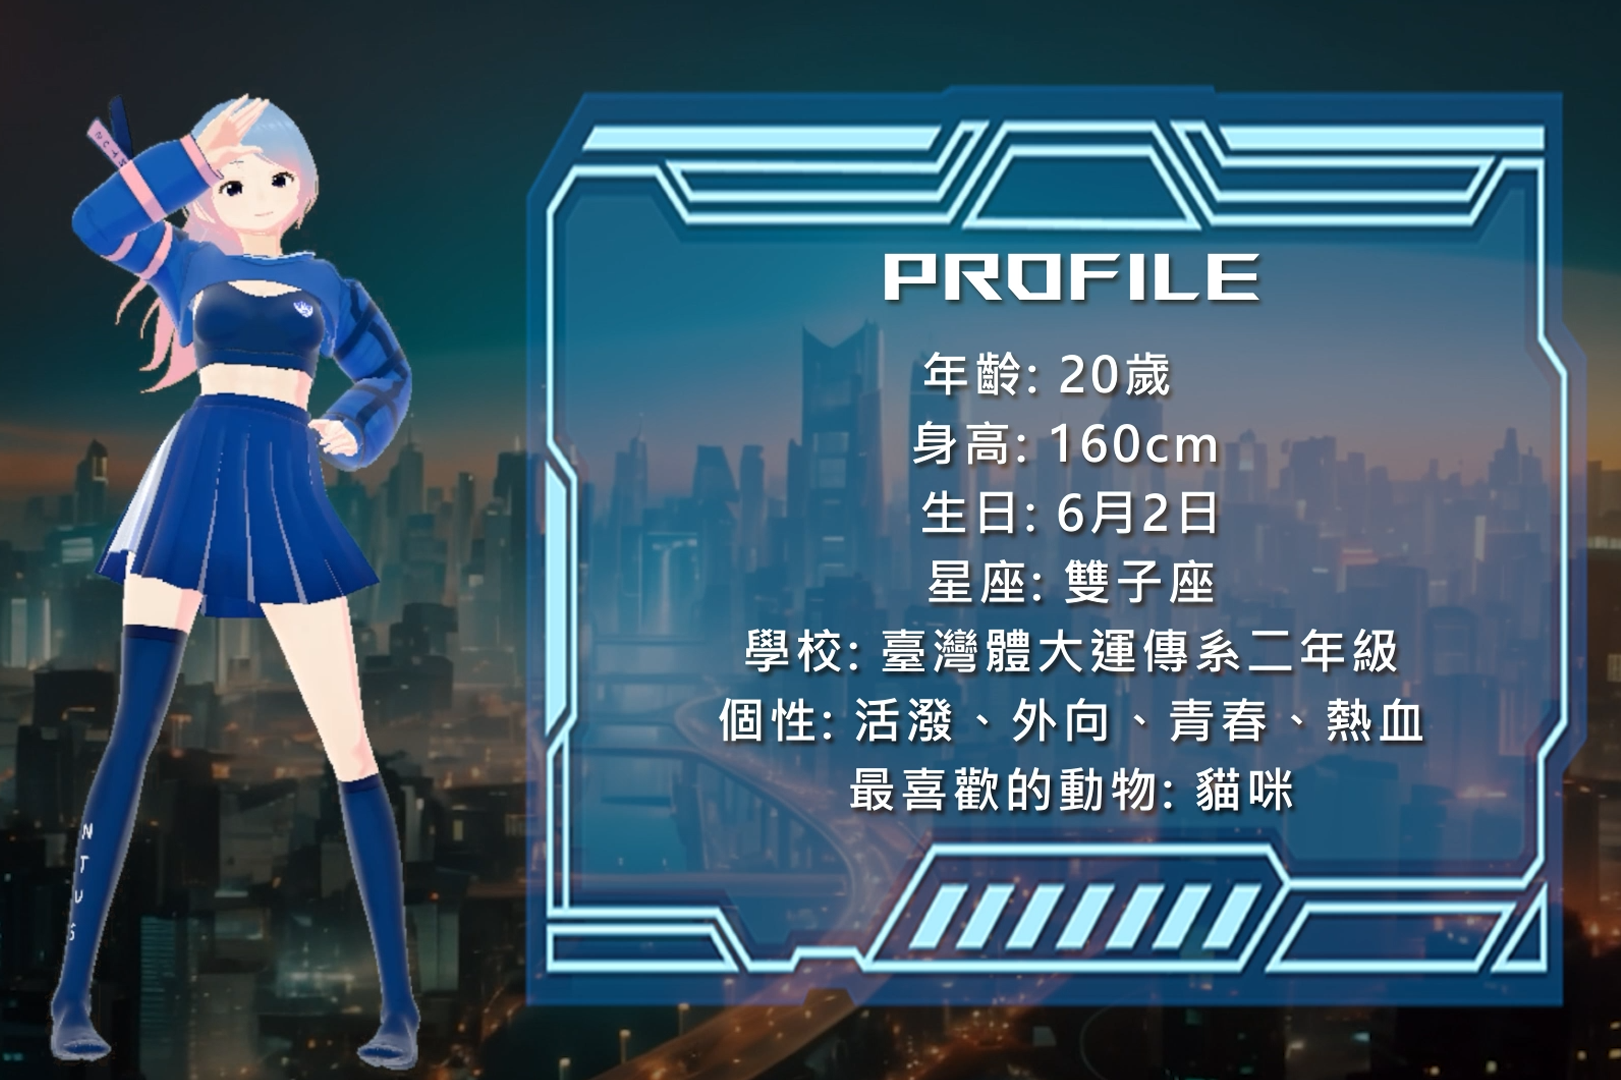 臺灣體大組成學生團隊，以AI科技為113年全國大專校院運動會設計出虛擬網紅代言人「小藍」